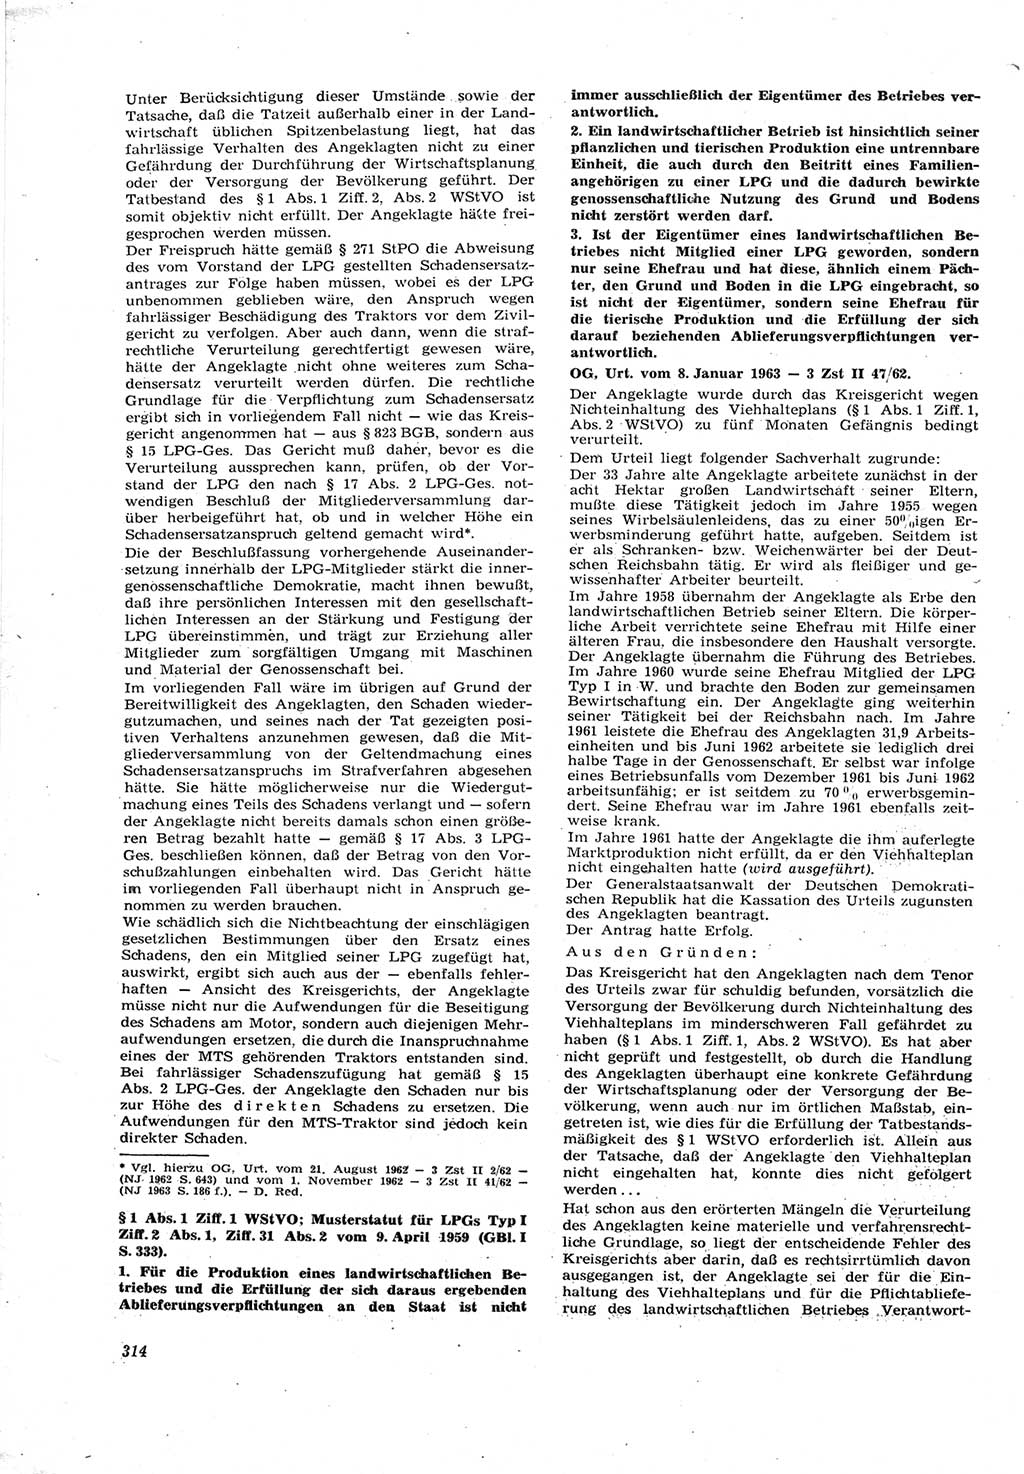 Neue Justiz (NJ), Zeitschrift für Recht und Rechtswissenschaft [Deutsche Demokratische Republik (DDR)], 17. Jahrgang 1963, Seite 314 (NJ DDR 1963, S. 314)